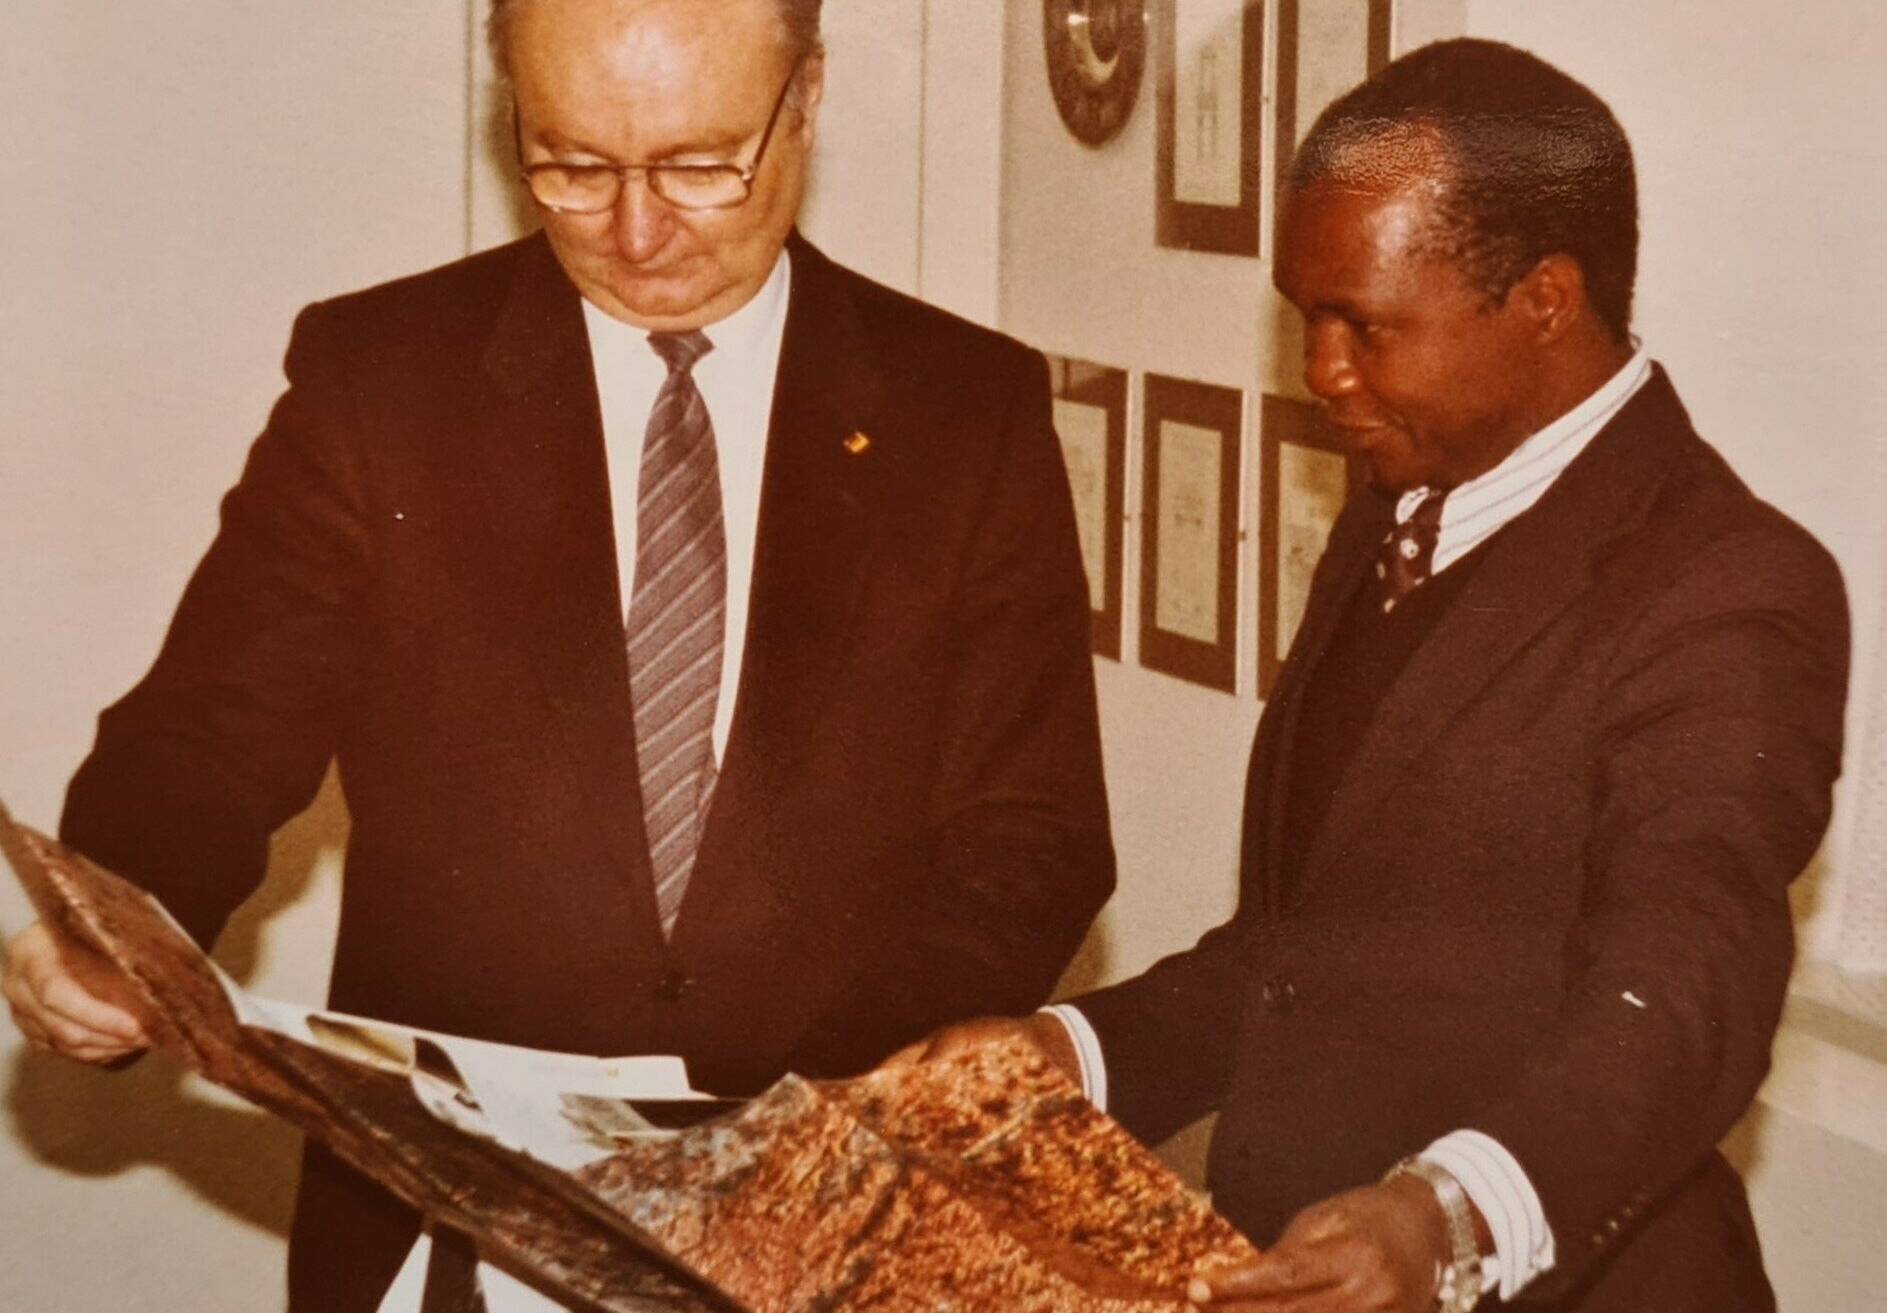  Dr. Heinz Günther Hüsch, ehemaliger Bundestags-Abgeordneter aus Neuss, und Paul Ssemogerere, Vorsitzender der Democratic Party (Uganda) und Onkel des gleichnamigen Erzbischofs, in Neuss.  